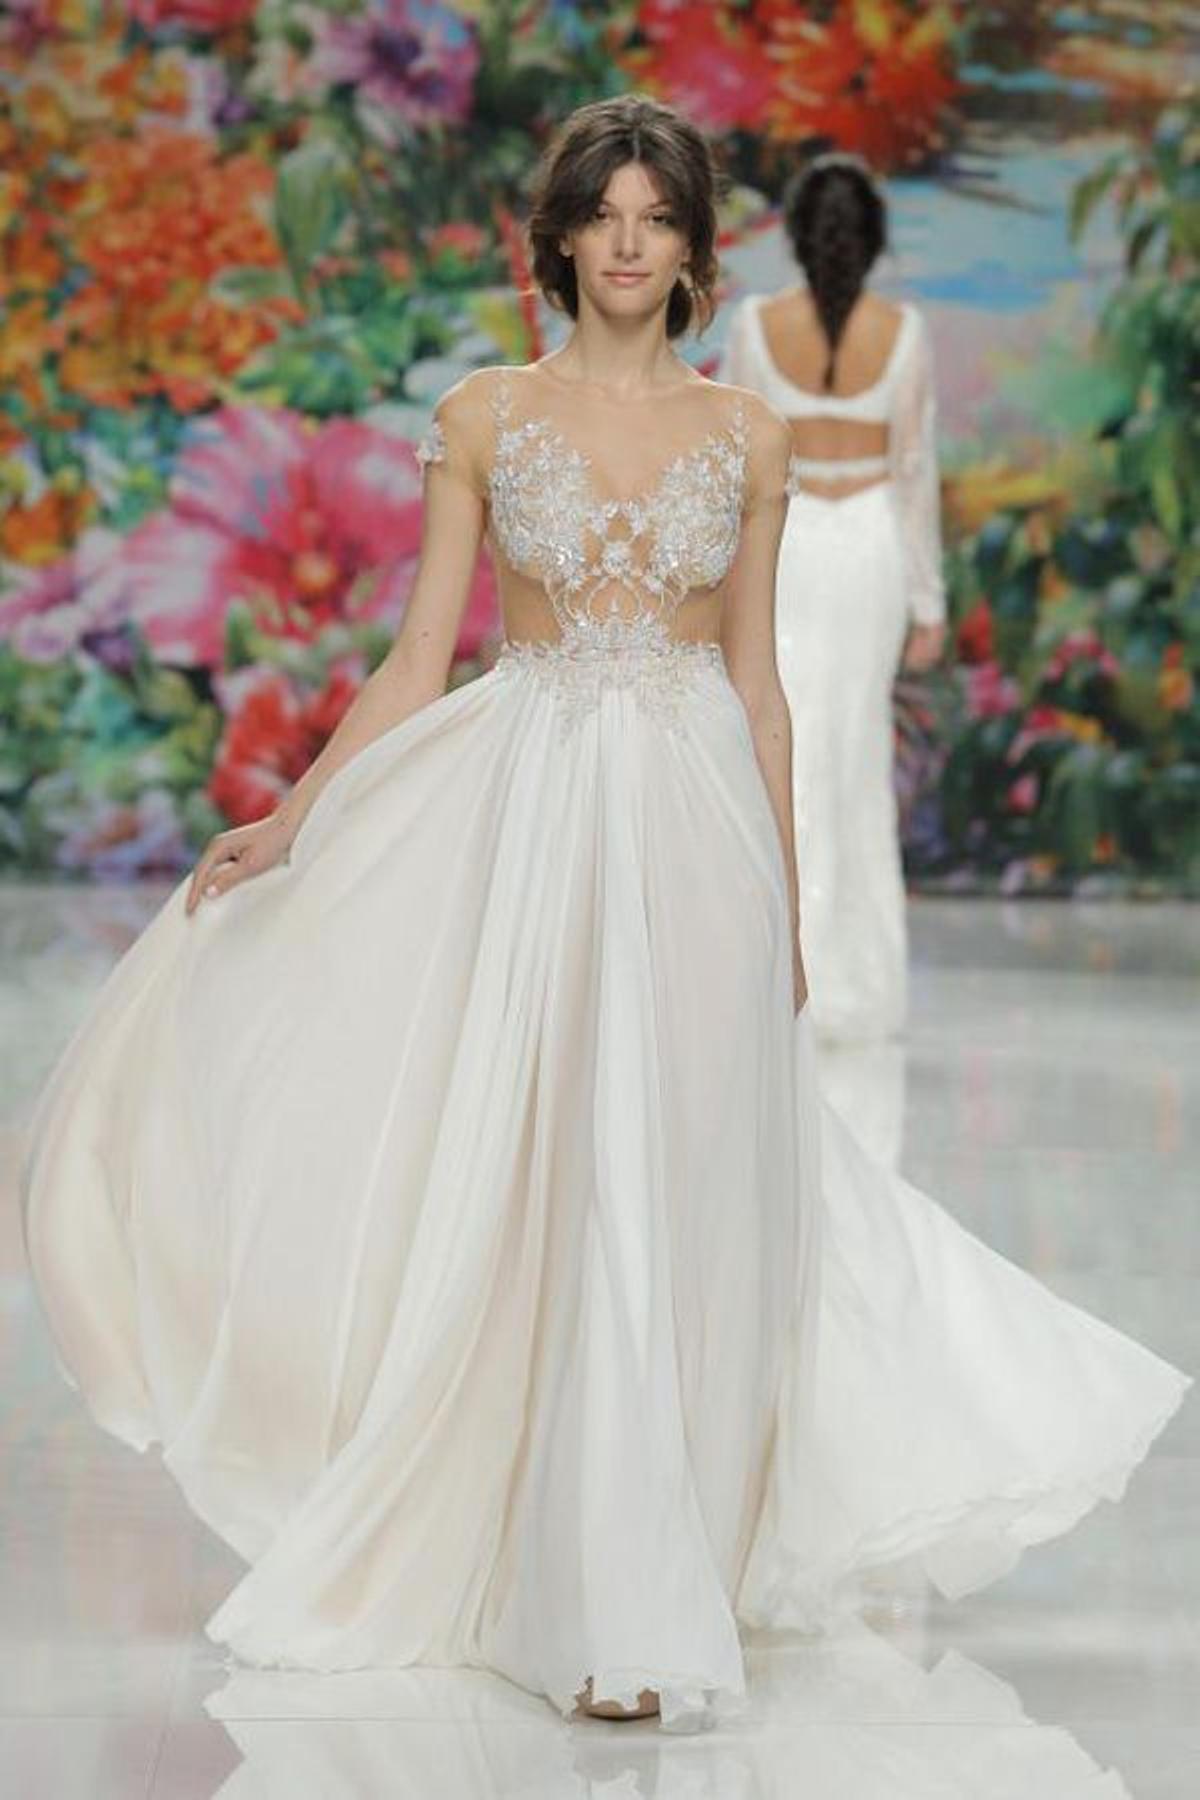 Barcelona Bridal Fashion Week: Galia Lahav